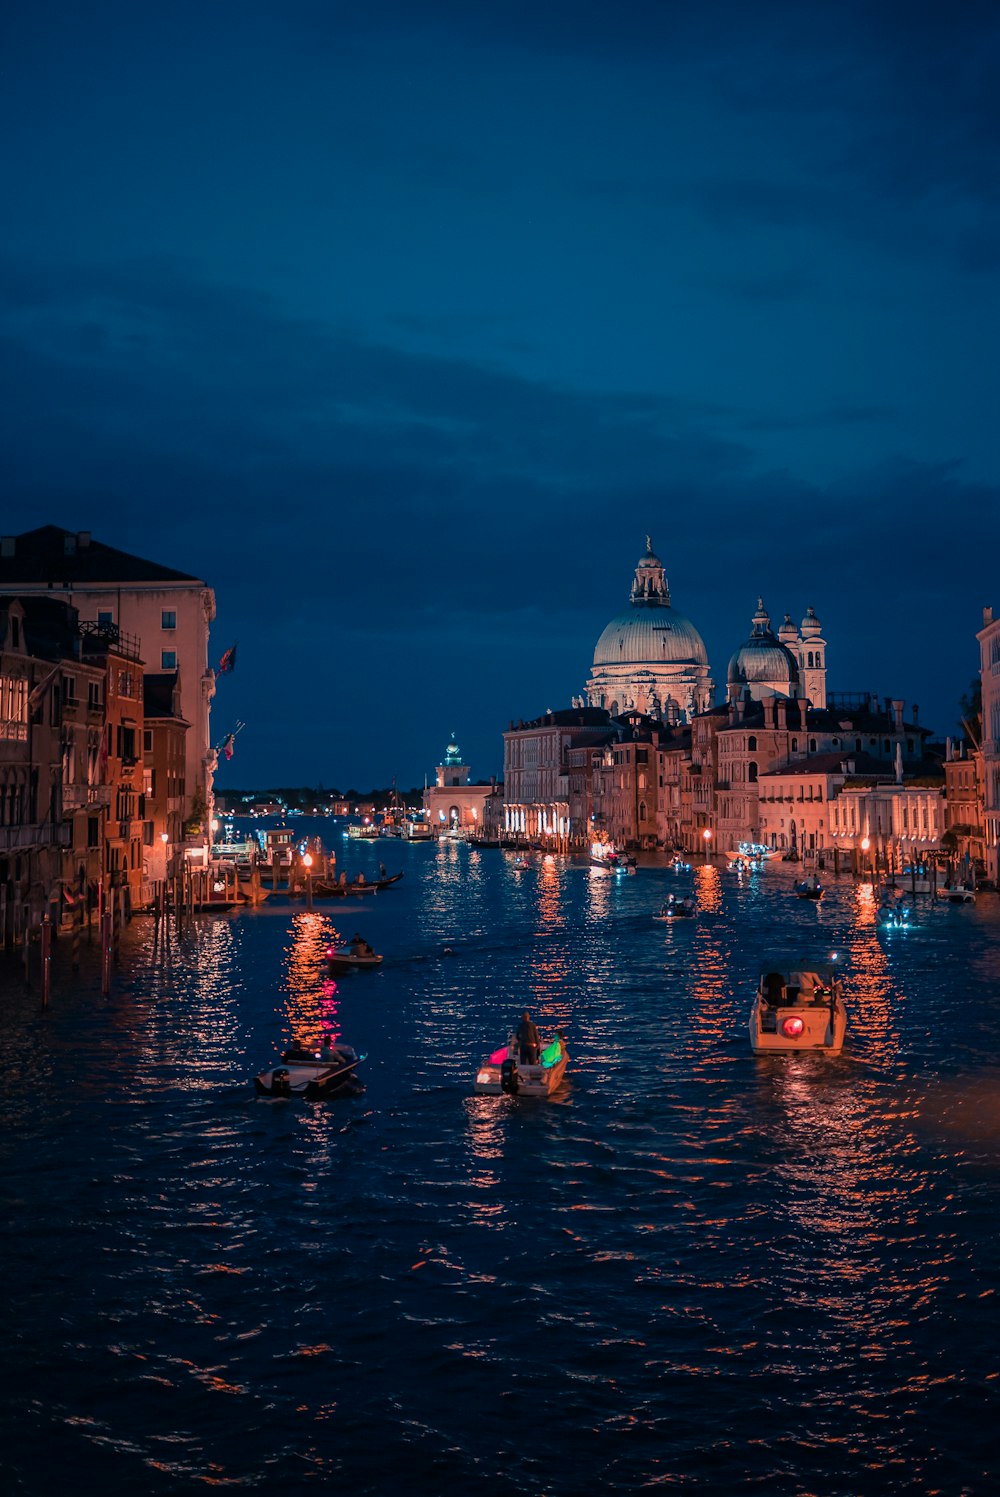 personas que viajan en bote en el río cerca de edificios durante la noche